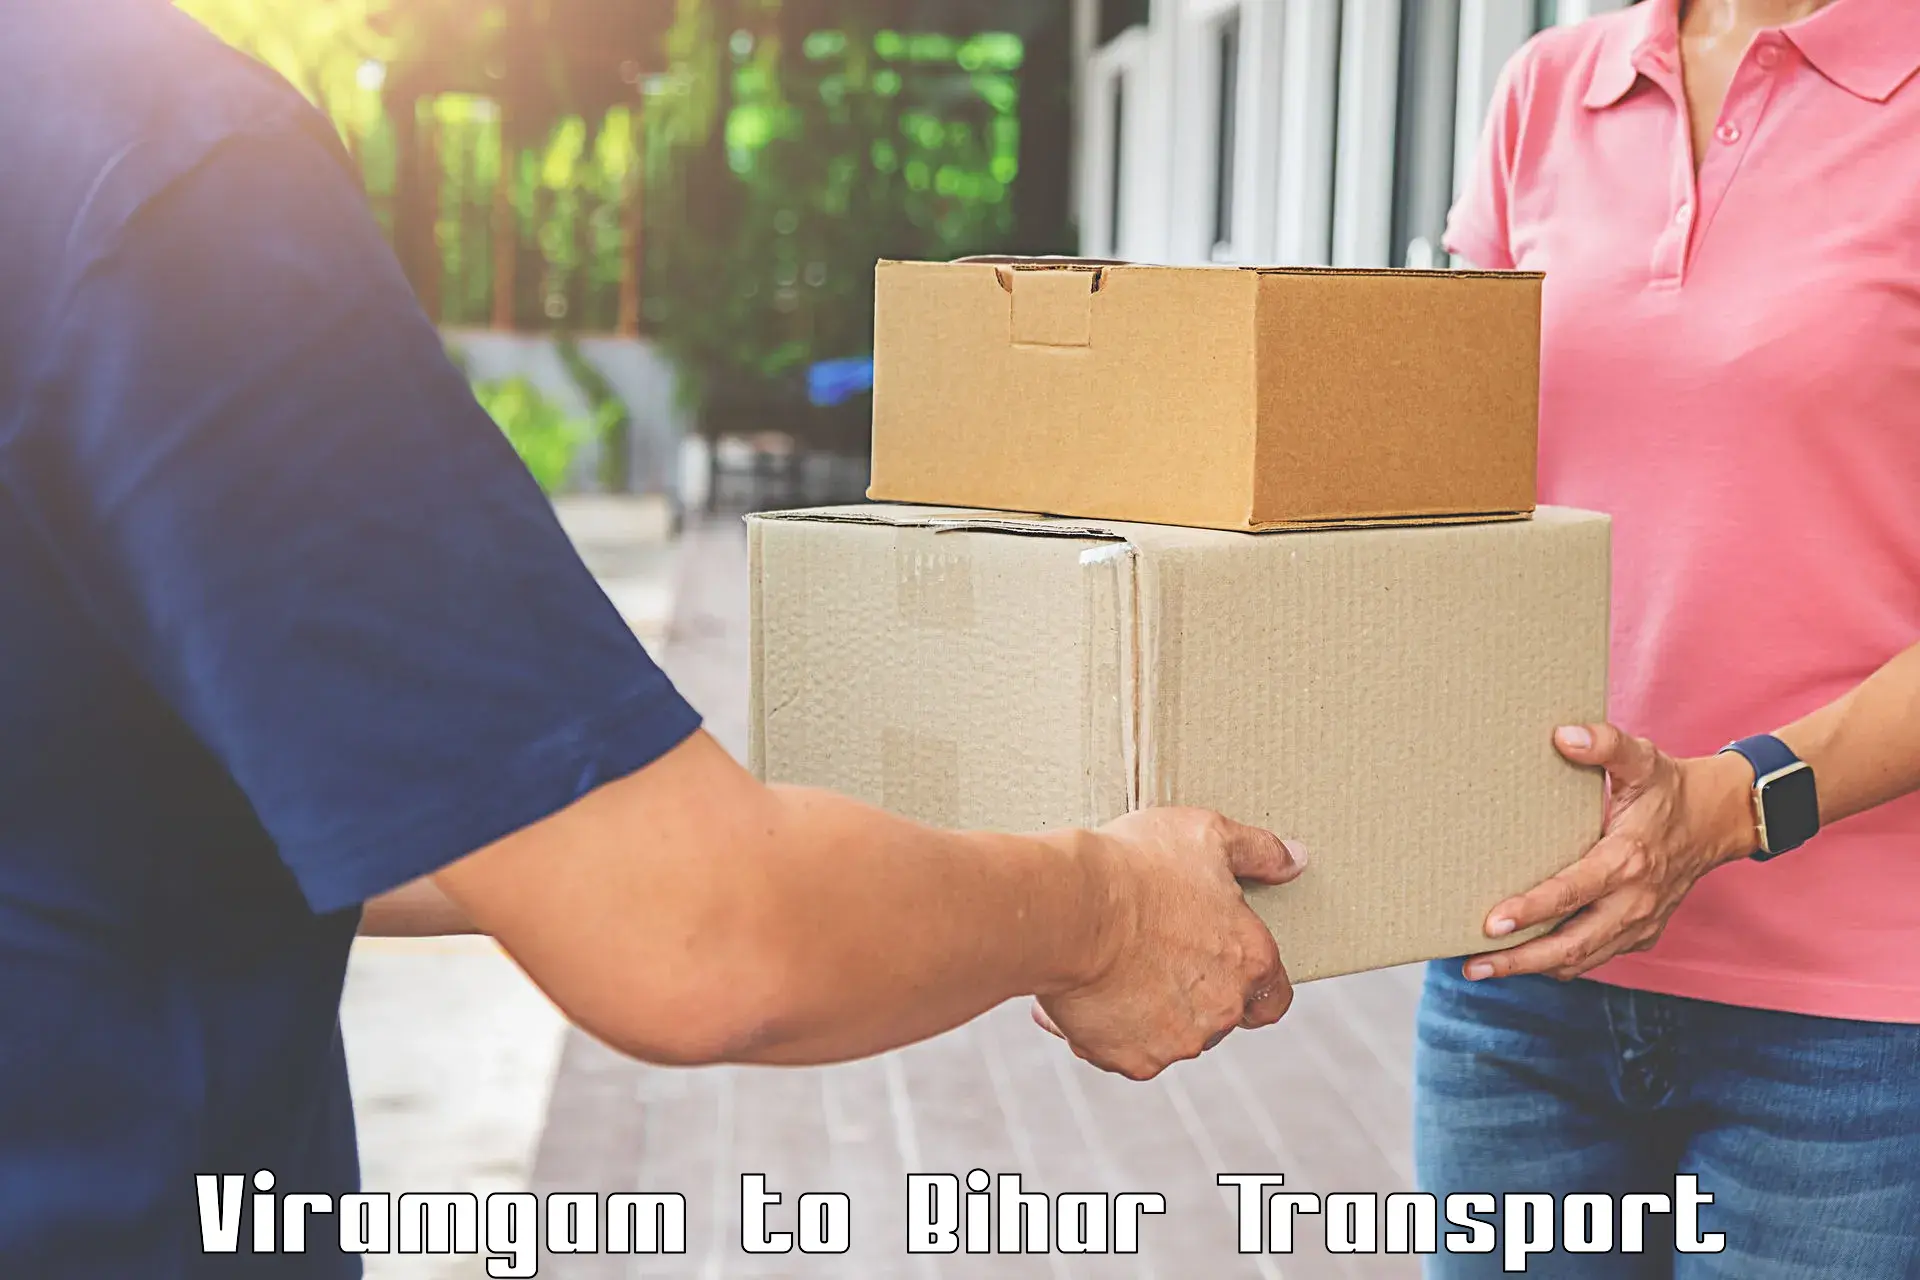 Goods transport services Viramgam to Piro